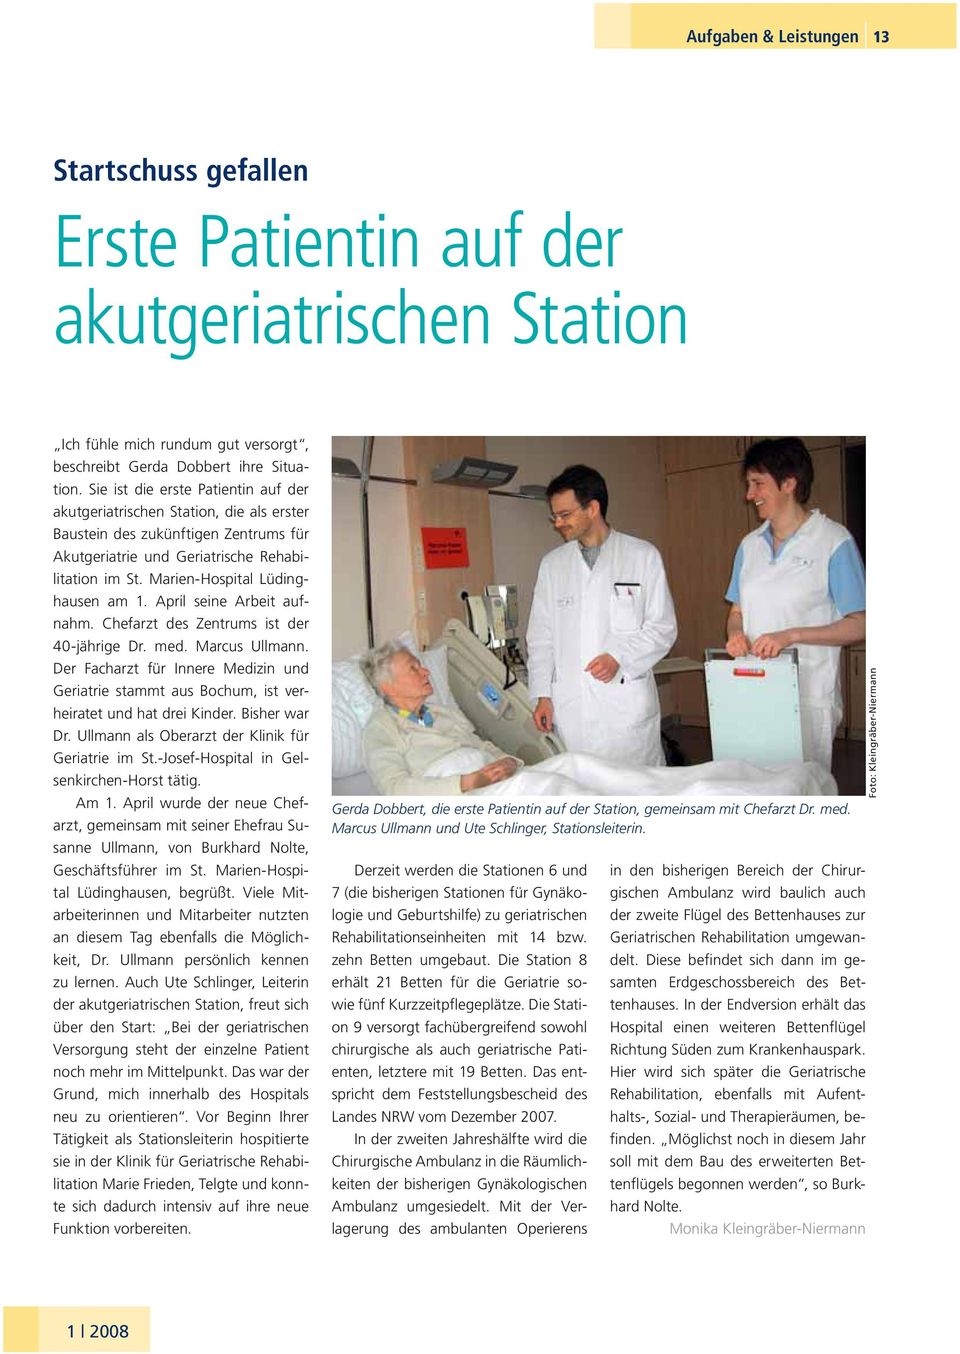 Marien-Hospital Lüdinghausen am 1. April seine Arbeit aufnahm. Chefarzt des Zentrums ist der 40-jährige Dr. med. Marcus Ullmann.